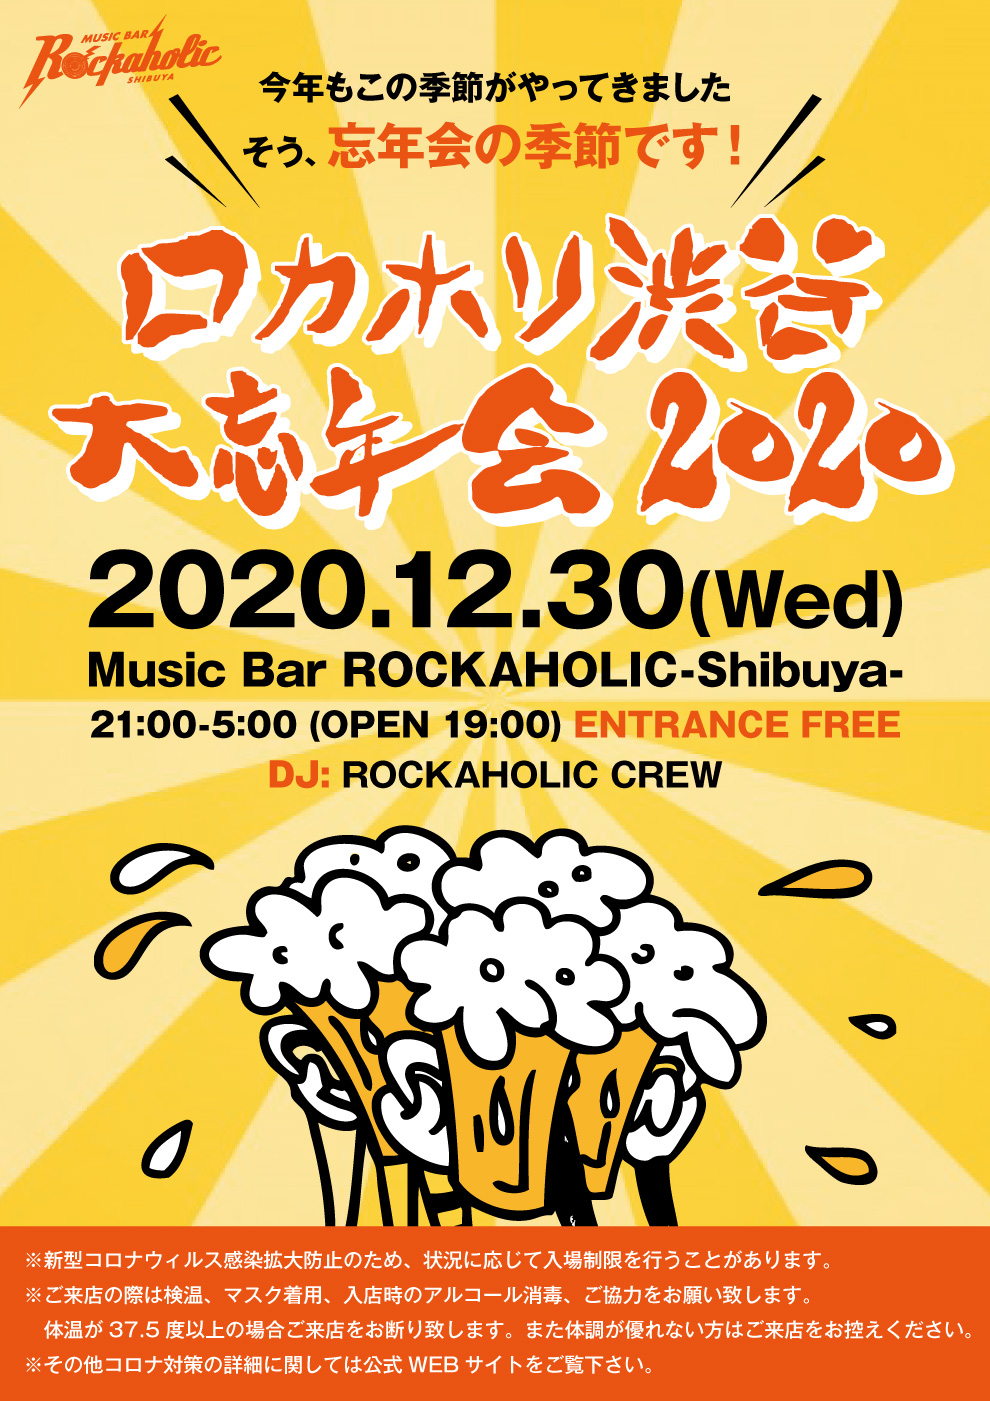 https://bar-rockaholic.jp/shibuya/blog/BAB01ABD-8EC4-4002-AB9C-6B54E9805FFD.jpeg